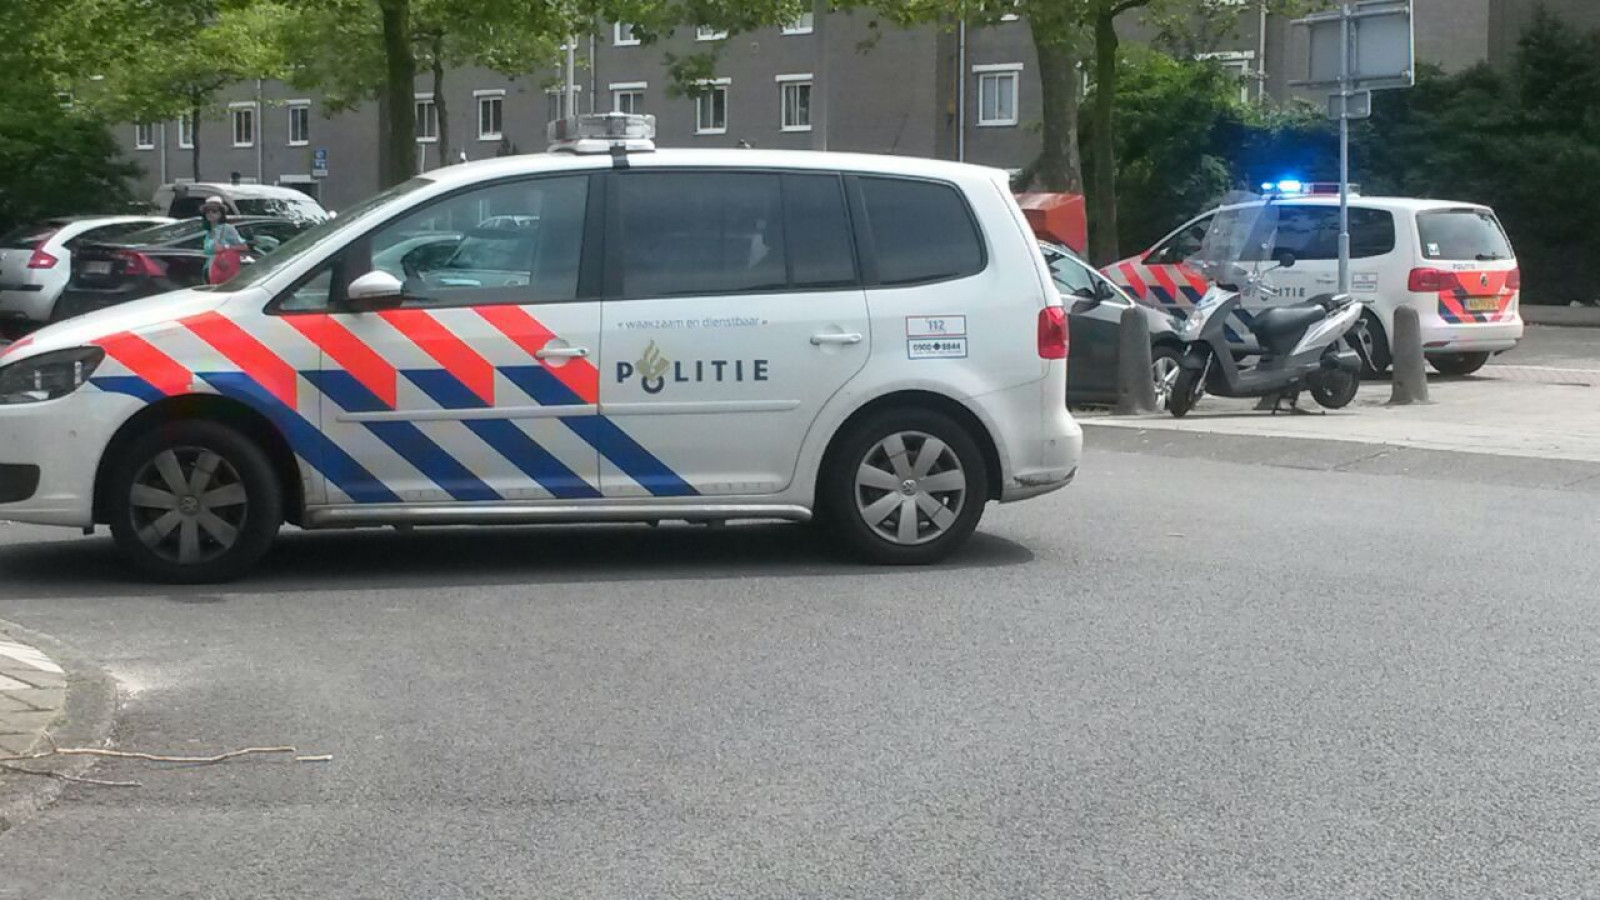 Politie schiet verdachte neer in Buitenveldert